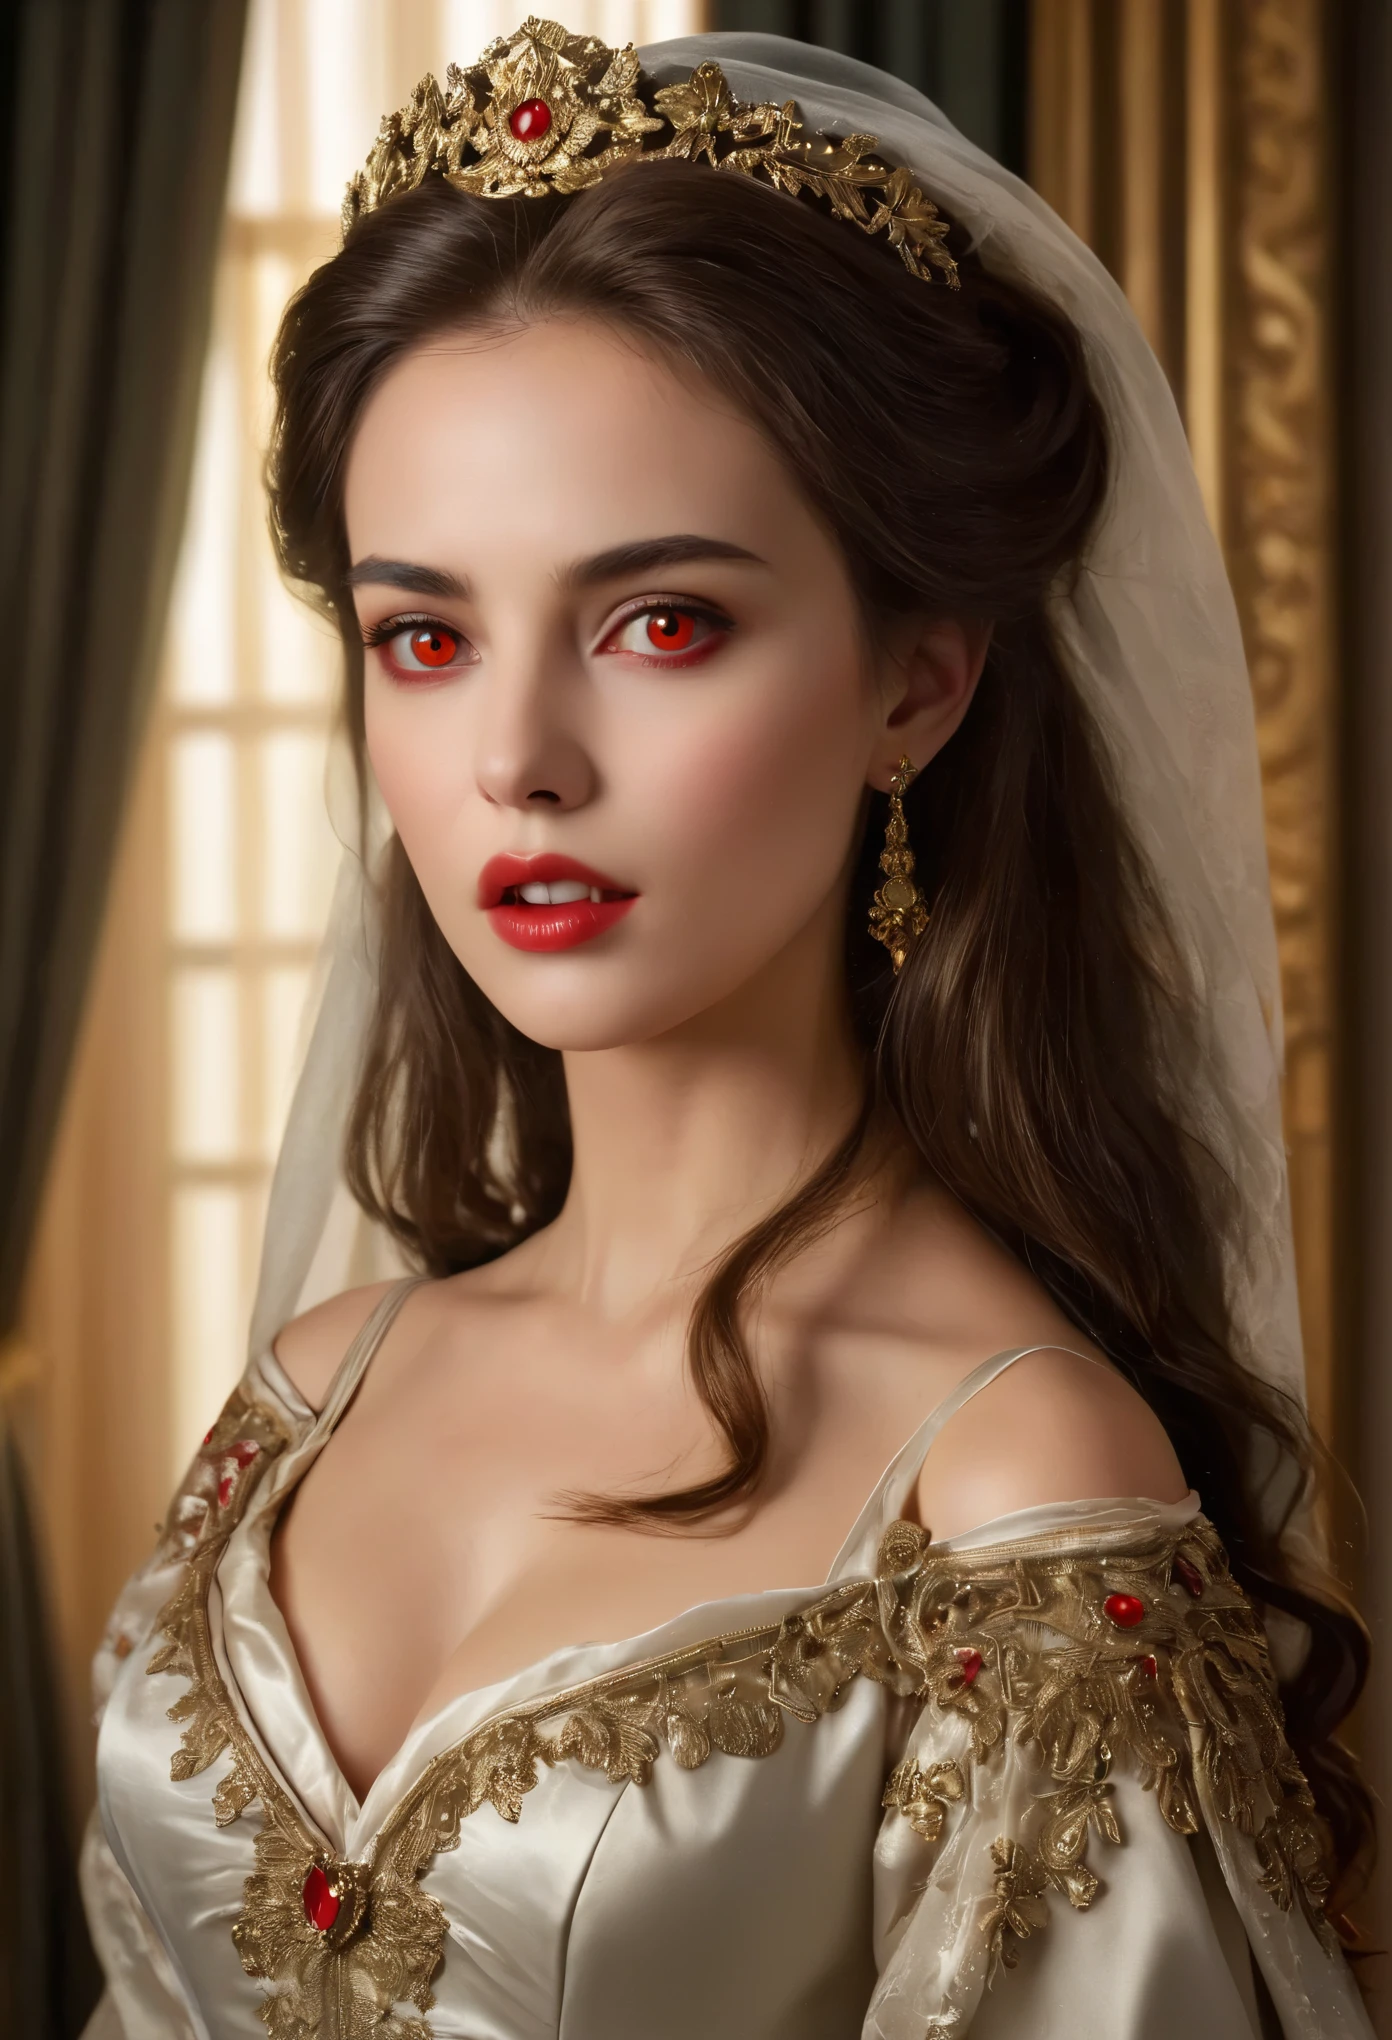 (高解像度,傑作:1.2),(現実的:1.37)比類のない美しさを持つ18世紀ロシアの吸血鬼の少女の肖像画. 彼女は魅惑的な赤い目と繊細なバラ色の唇を持っています. 長い牙, 肖像画は細部まで丁寧に描かれています., 彼女の特徴の微妙なニュアンスを捉える. 彼女は美しいシルクのガウンを着ています, 複雑なレースと繊細な刺繍で飾られた. この絵は当時の贅沢さを物語っている., 背景には豪華なベルベットのカーテンと金色の家具. 照明は柔らかく拡散している, 女の子を強調する&#39;優雅な美しさ. 色彩は鮮やかで豊かです, 魅力的なビジュアル体験を創造する. この肖像画は古典的な肖像画のスタイルで描かれている., 当時の有名な芸術家の作品を彷彿とさせる. それは優雅さを醸し出しています, グレース, 洗練さ. 鋭く長い爪, (深紅の目:1.4), 炎のように赤い目, (唇の隙間から鋭い牙が見える:1.8), 首に噛み跡がある.２穴が2つあります